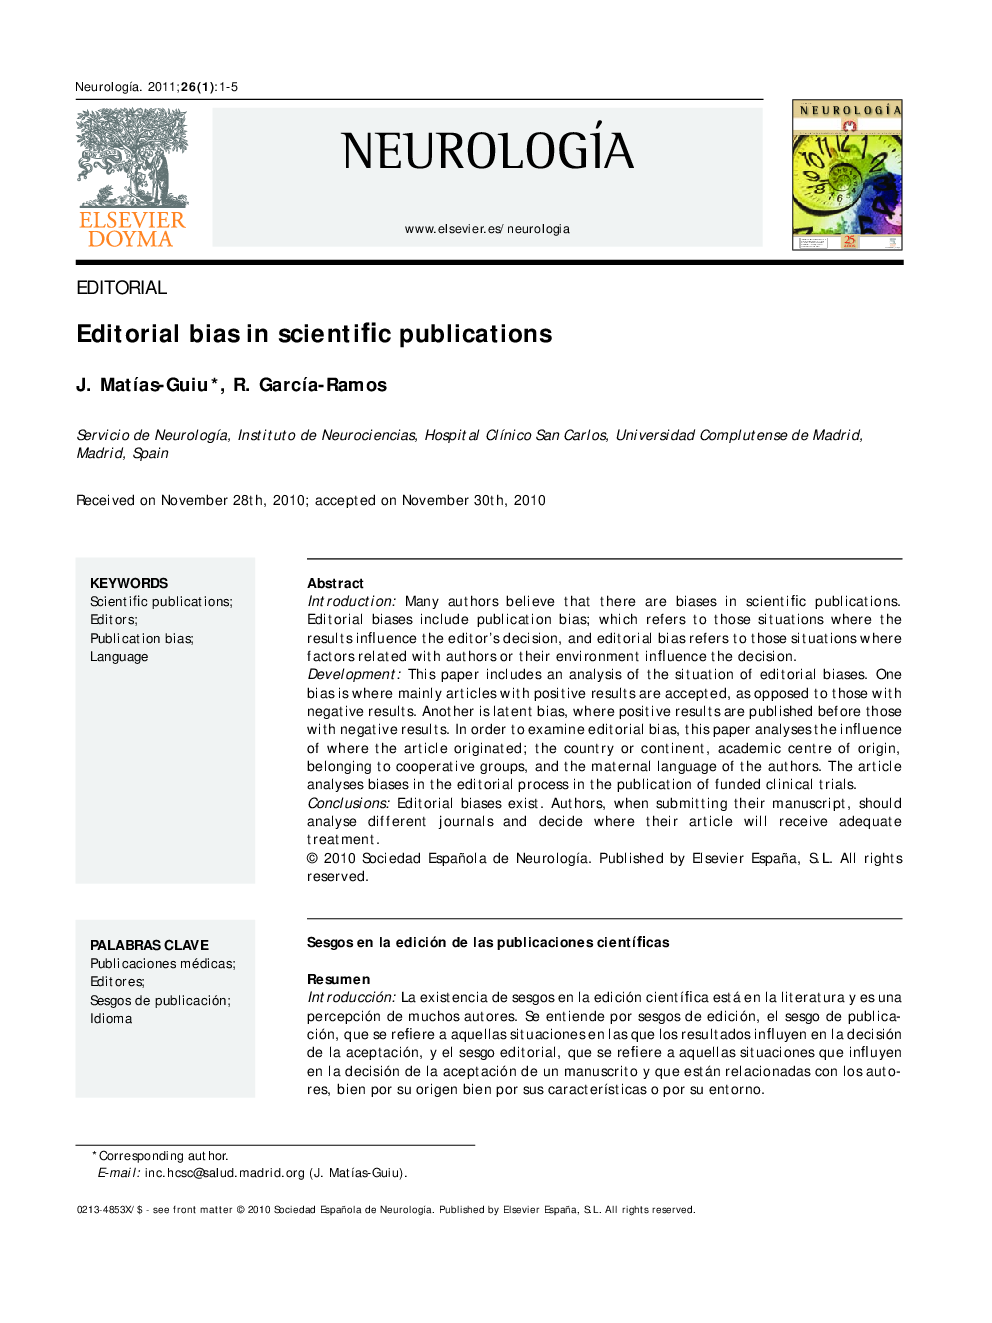 Editorial bias in scientific publications